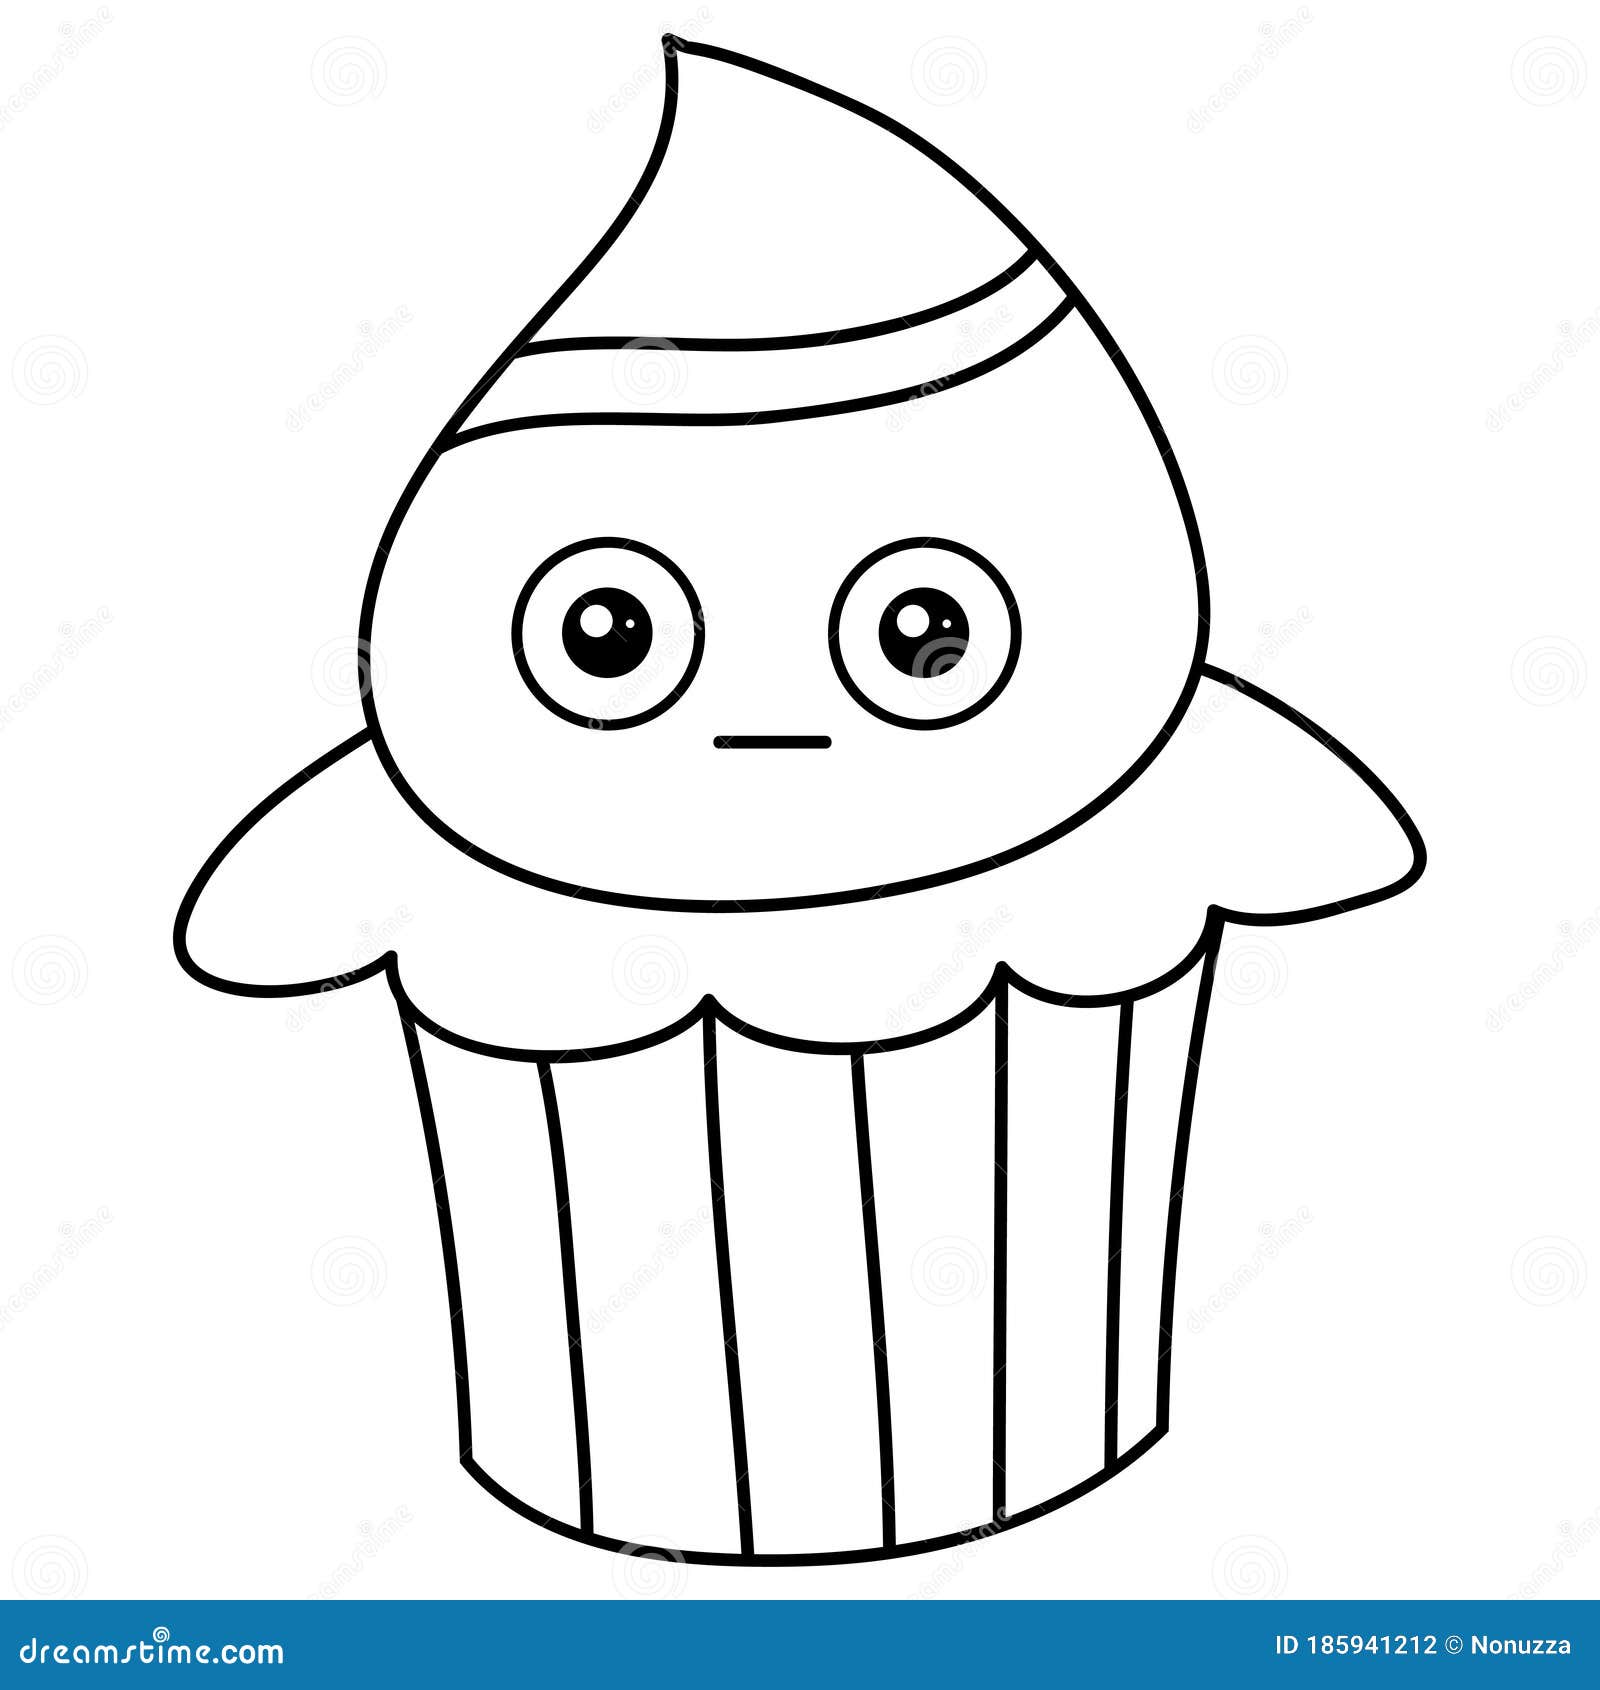 Como Desenhar Um Cupcake De Chocolate Com Um Rosto Bonito Para Crianças.  Tutorial De Desenho Passo a Passo Ilustração do Vetor - Ilustração de  livro, creme: 242746072